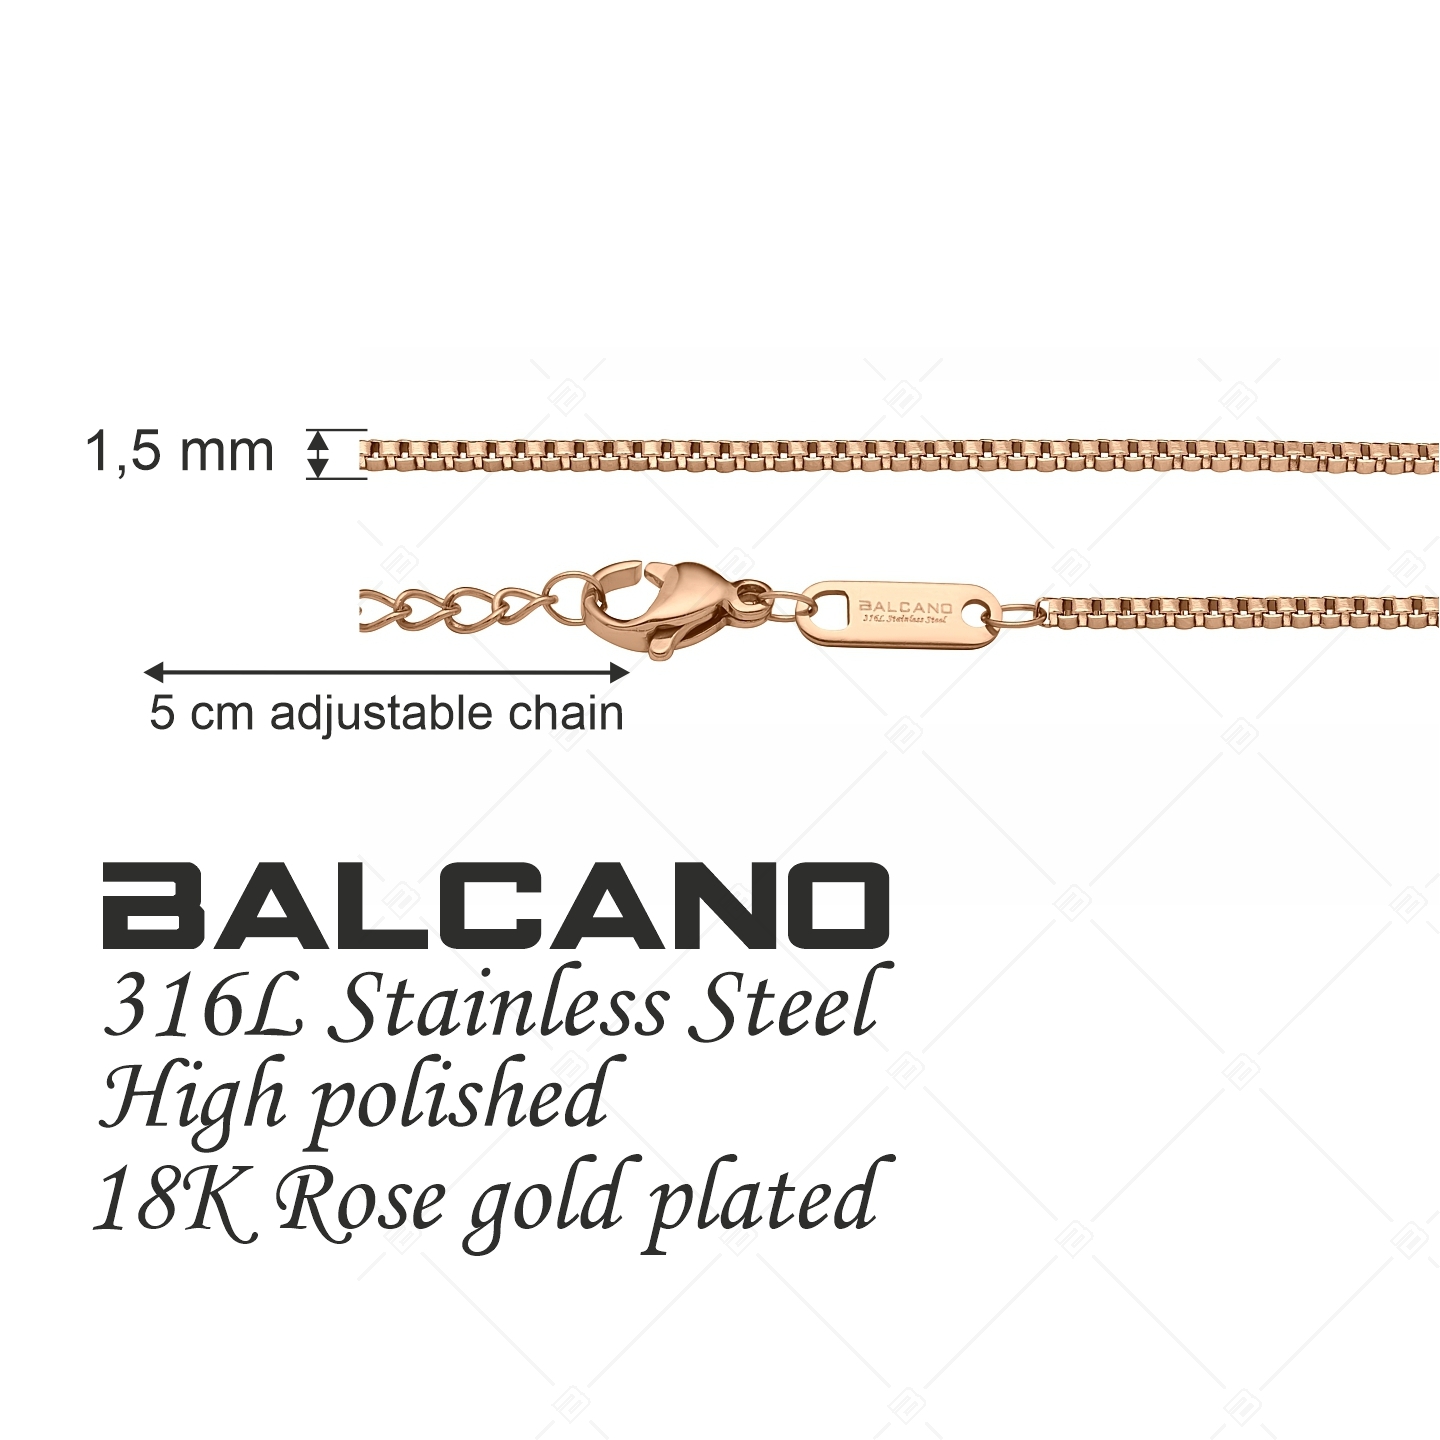 BALCANO - Venetian / Stainless Steel Venetian Chain, 18K Rose Gold Plated - 1,5 mm (341292BC96)